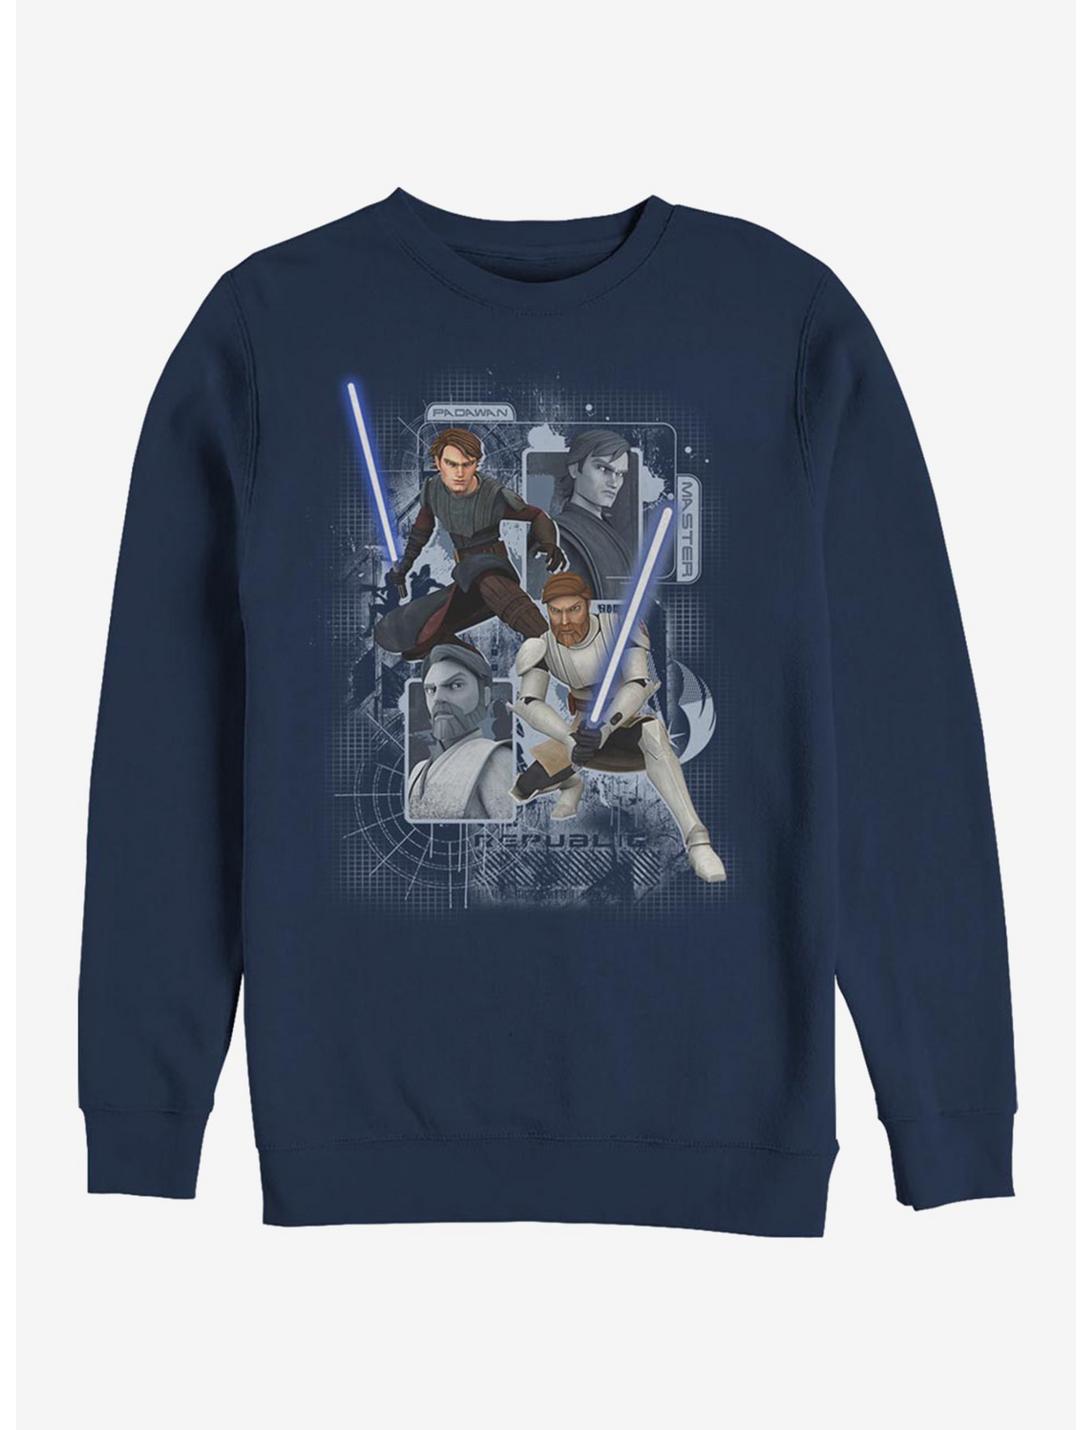 Plus Size Star Wars: The Clone Wars Schematic Shot Sweatshirt, NAVY, hi-res